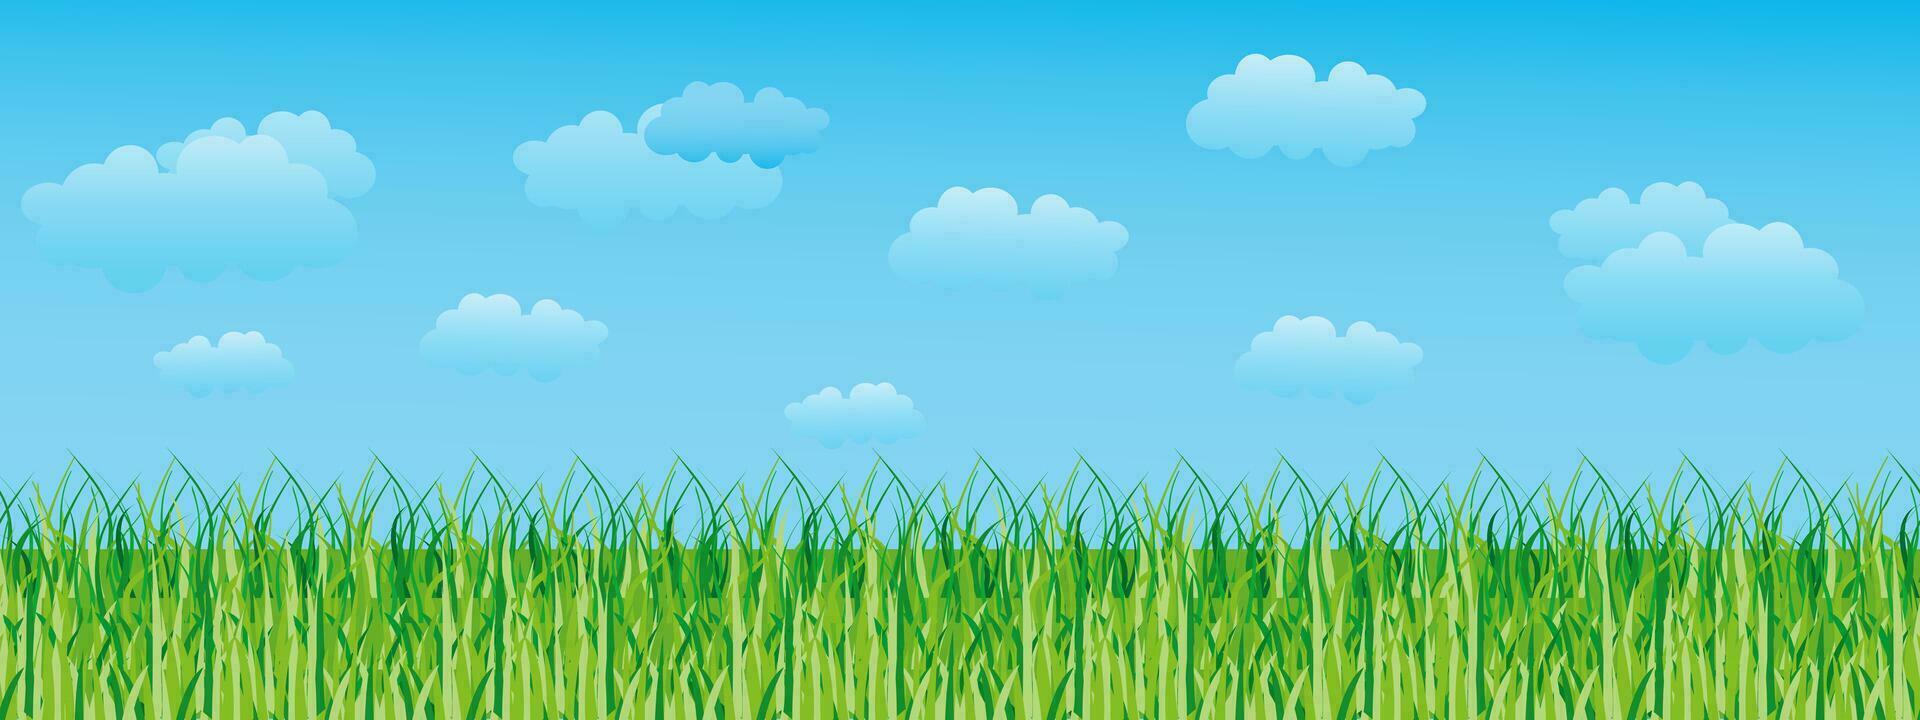 Sommer, Frühling Landschaft, Grün Feld und wolkig Himmel. nahtlos Grenze, Landschaft Hintergrund, Illustration, Vektor